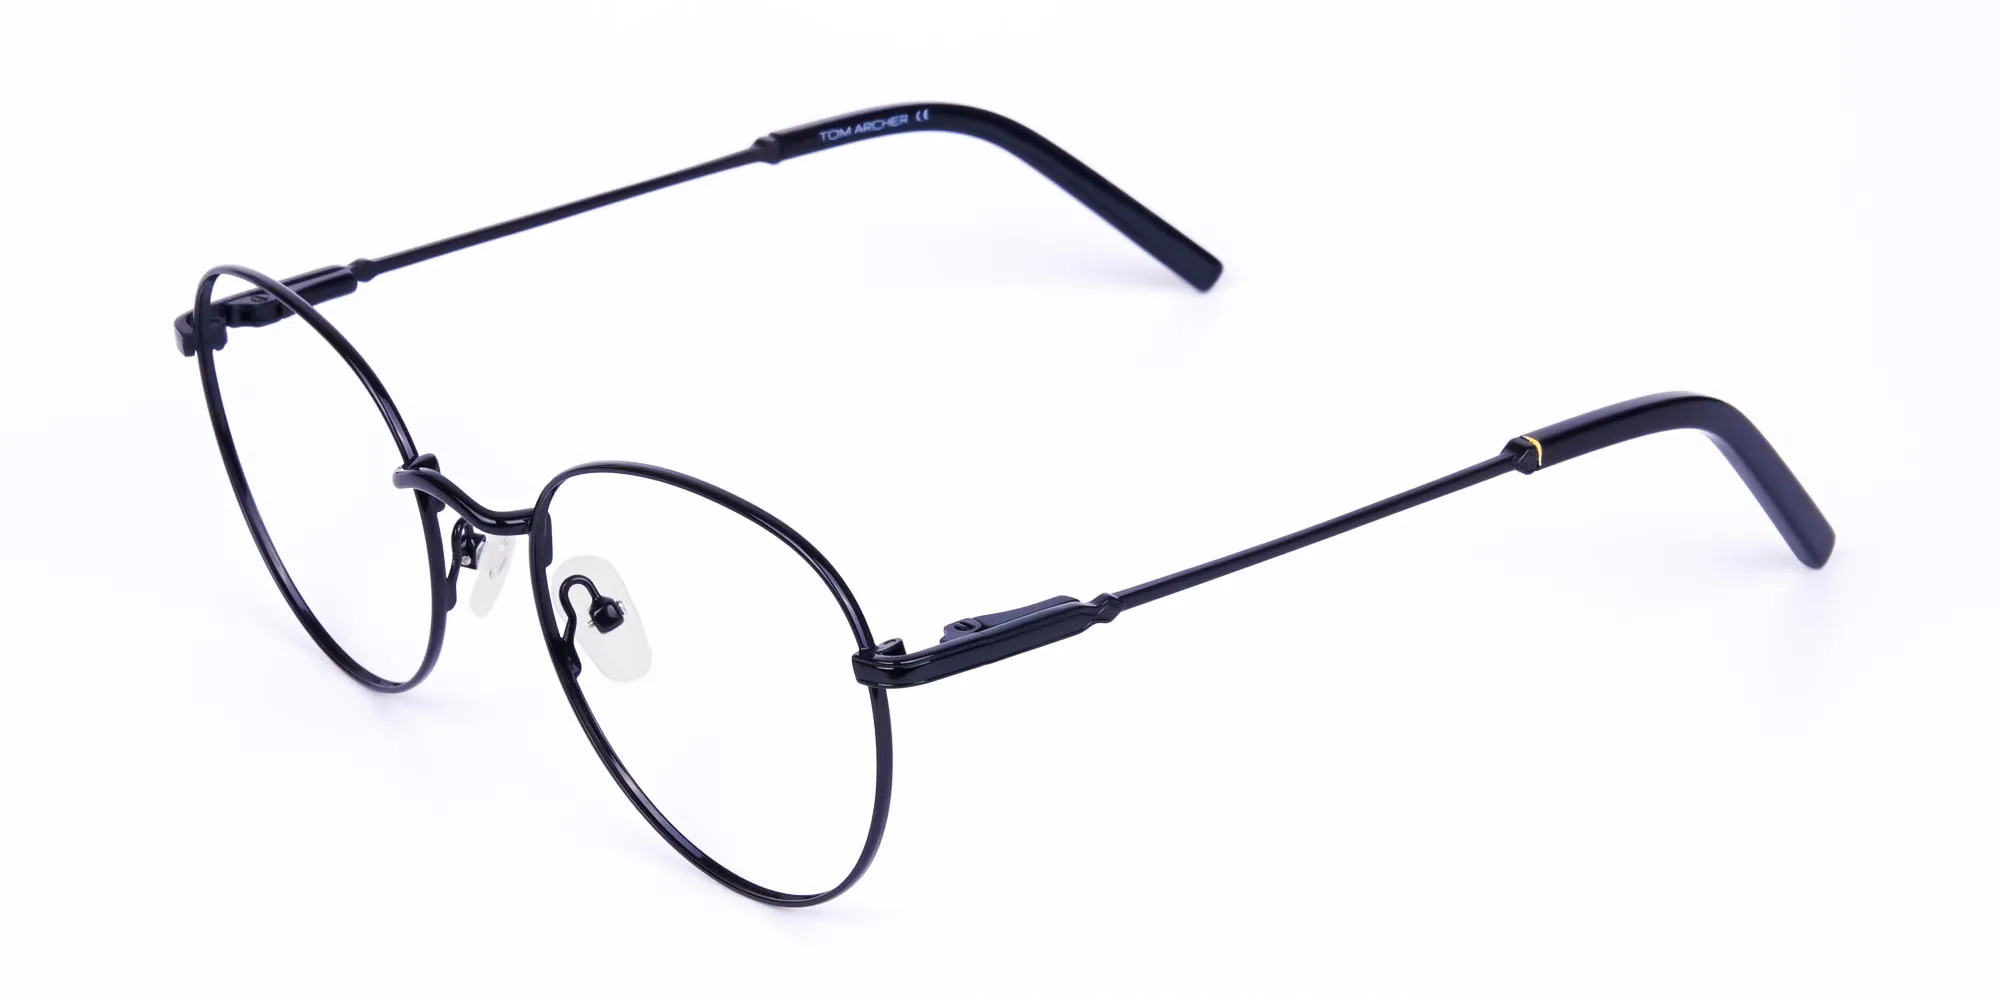 Designer Black Round Glasses Frame-2